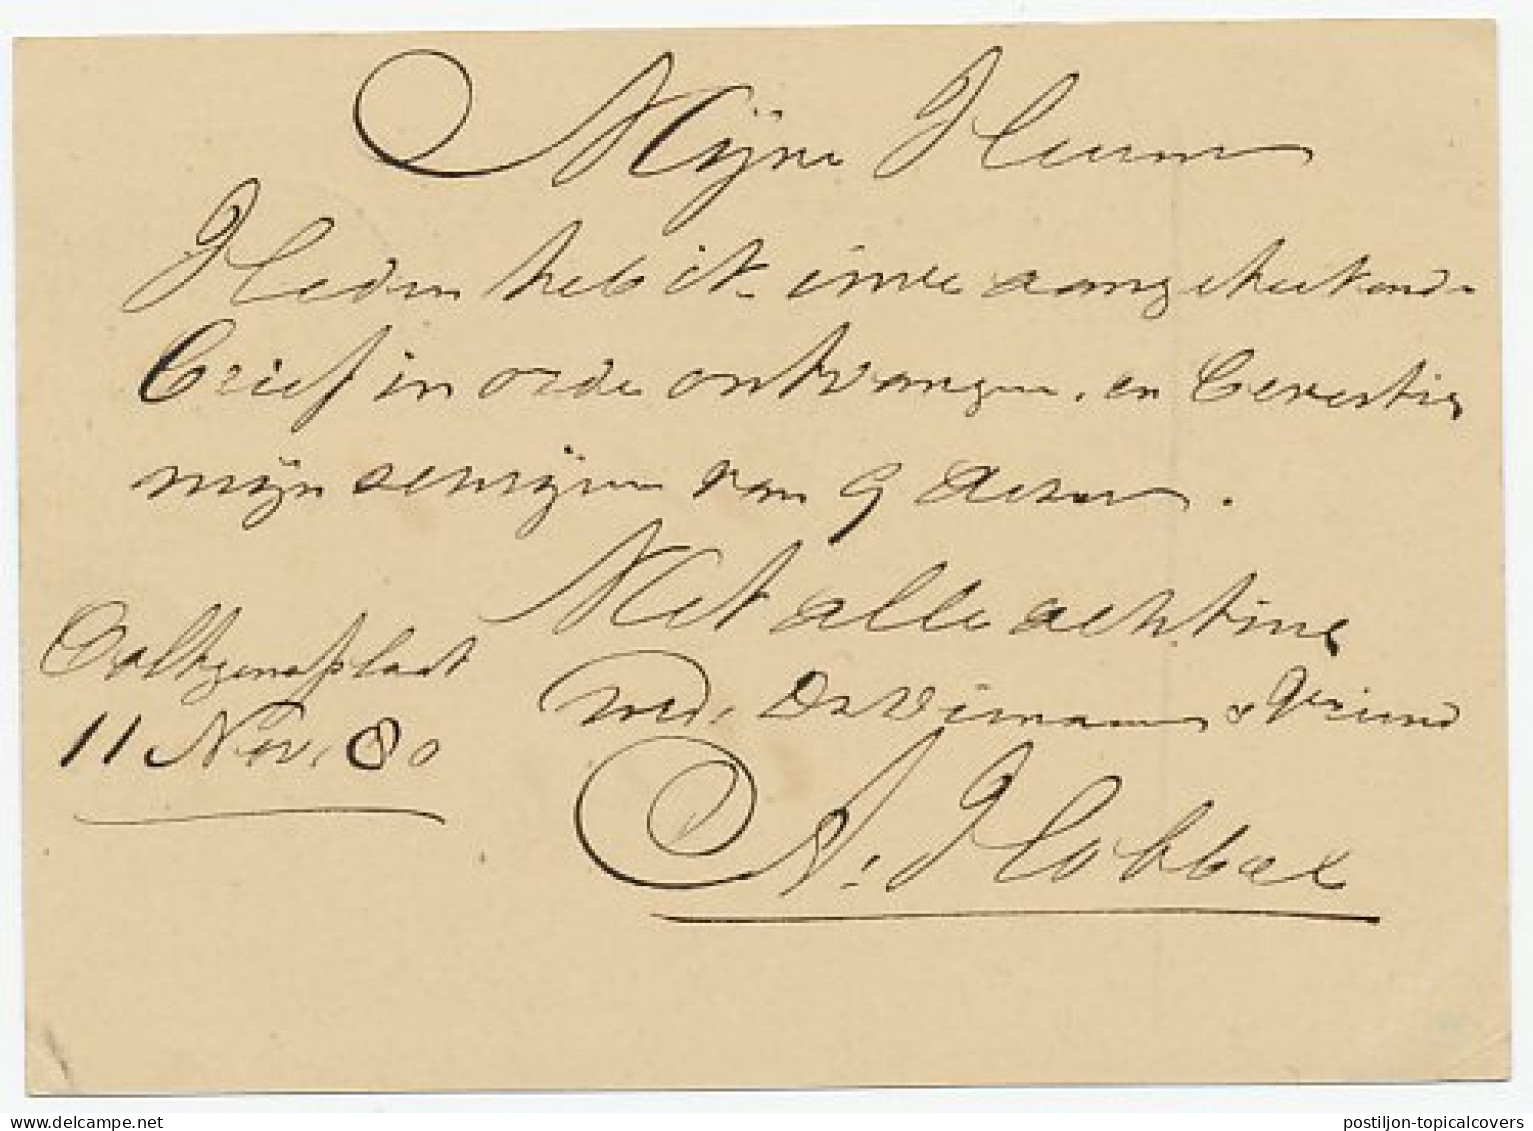 Naamstempel Ooltgensplaat 1880 - Lettres & Documents